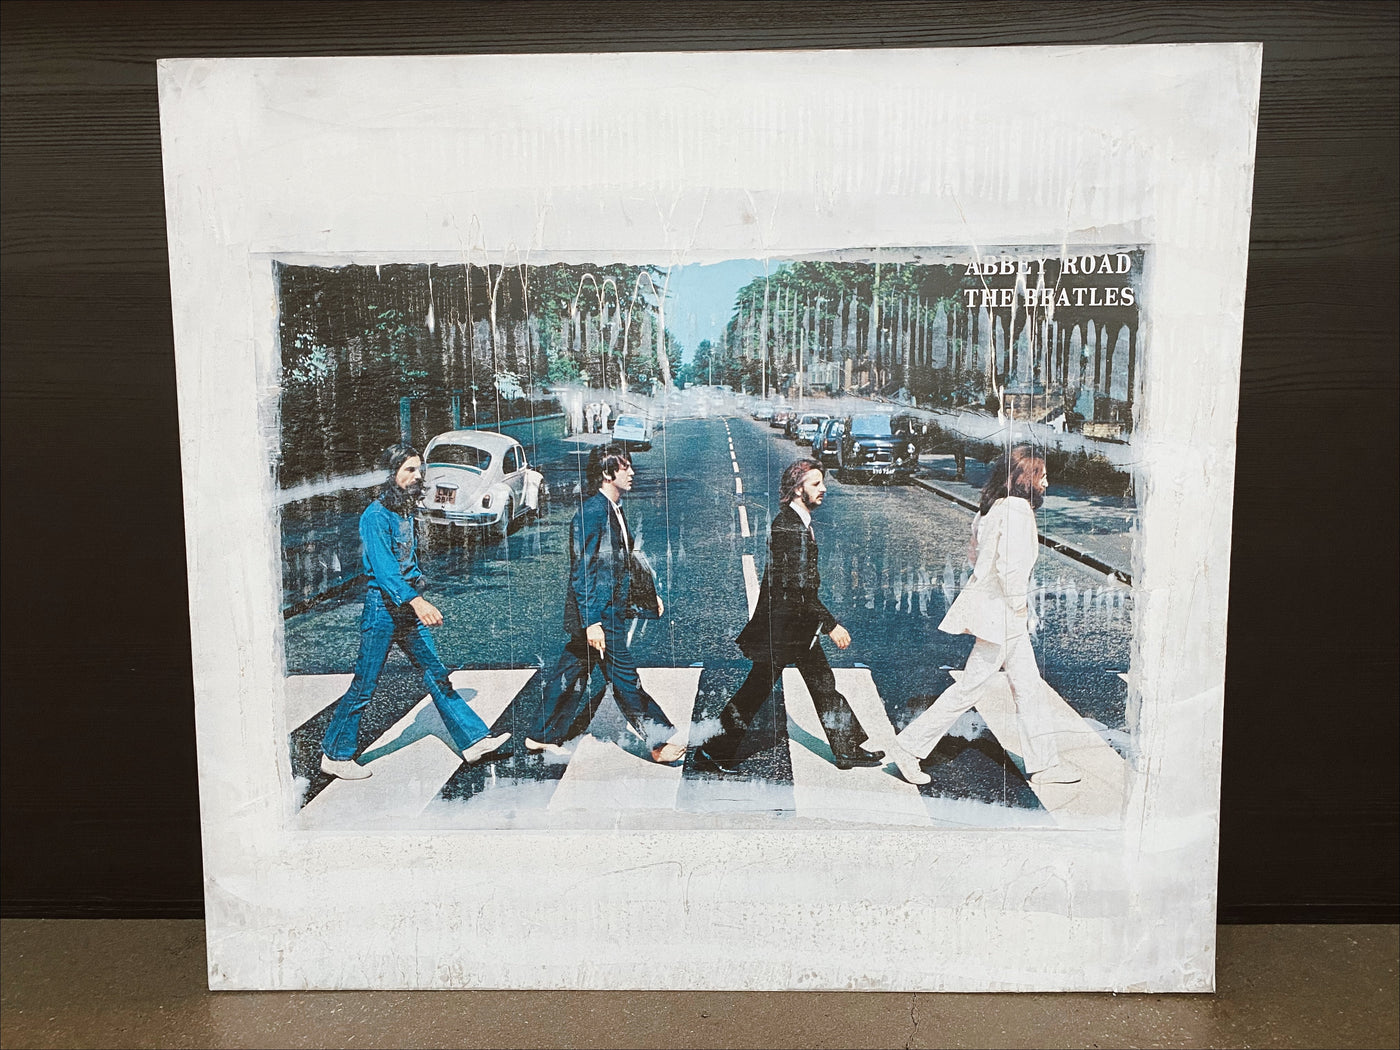 AAJ Abbey Road